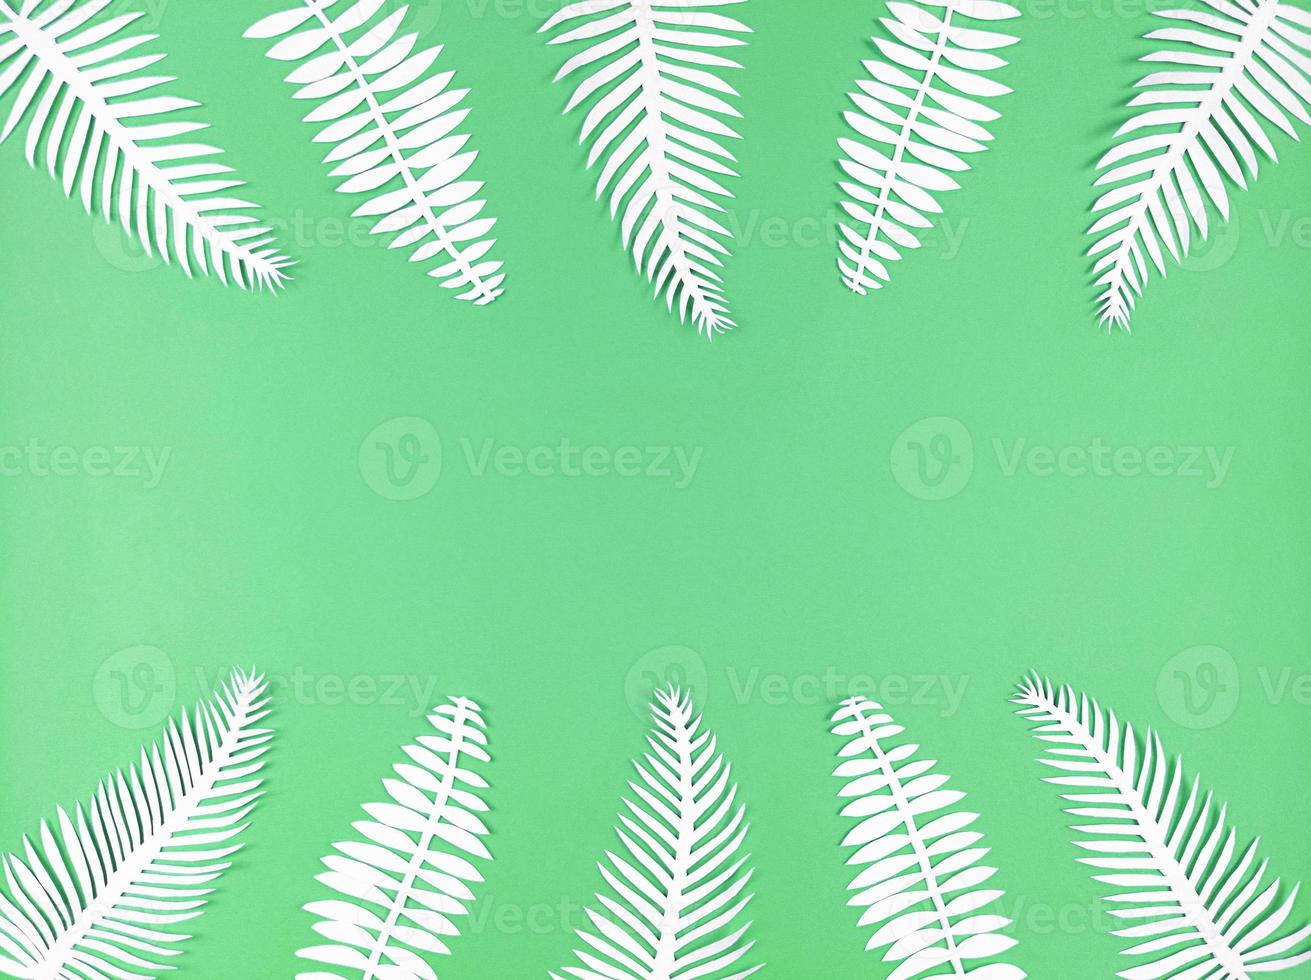 folhas de papel tropical sobre fundo verde, plana leiga com espaço de cópia. foto